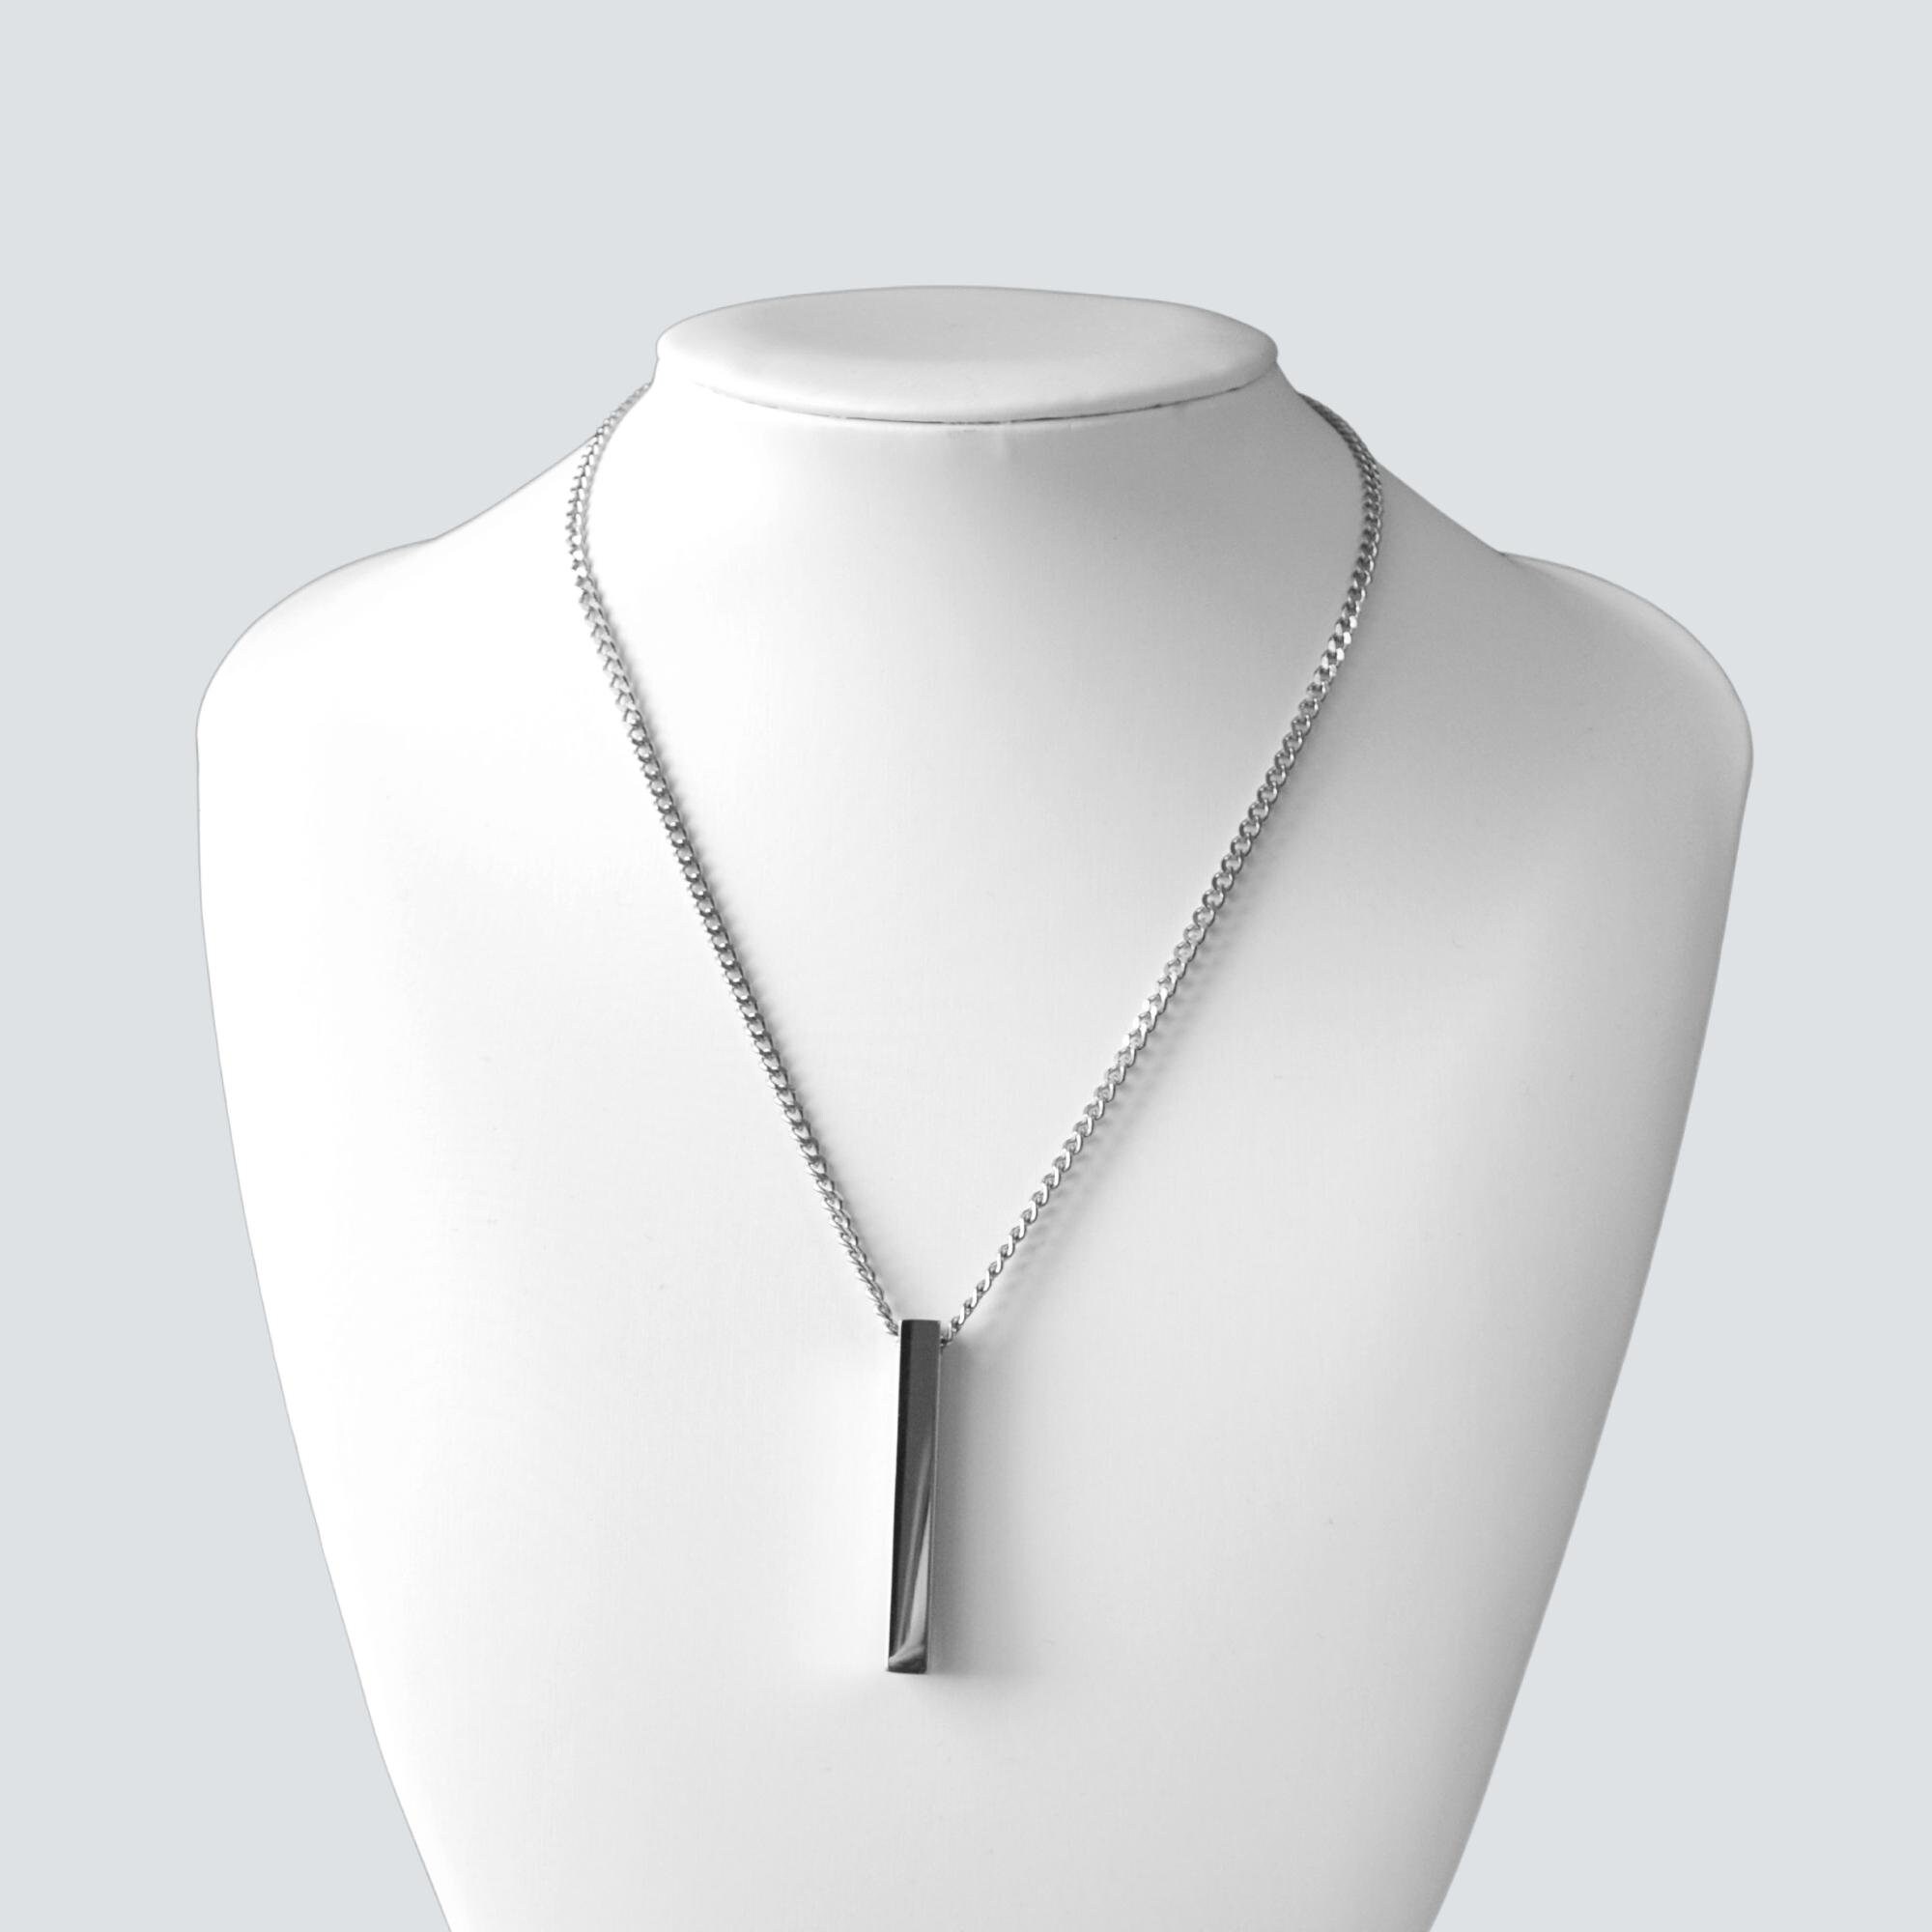 Silver Rectangular Bar Pendant Necklace - FENNO FASHION, LLC